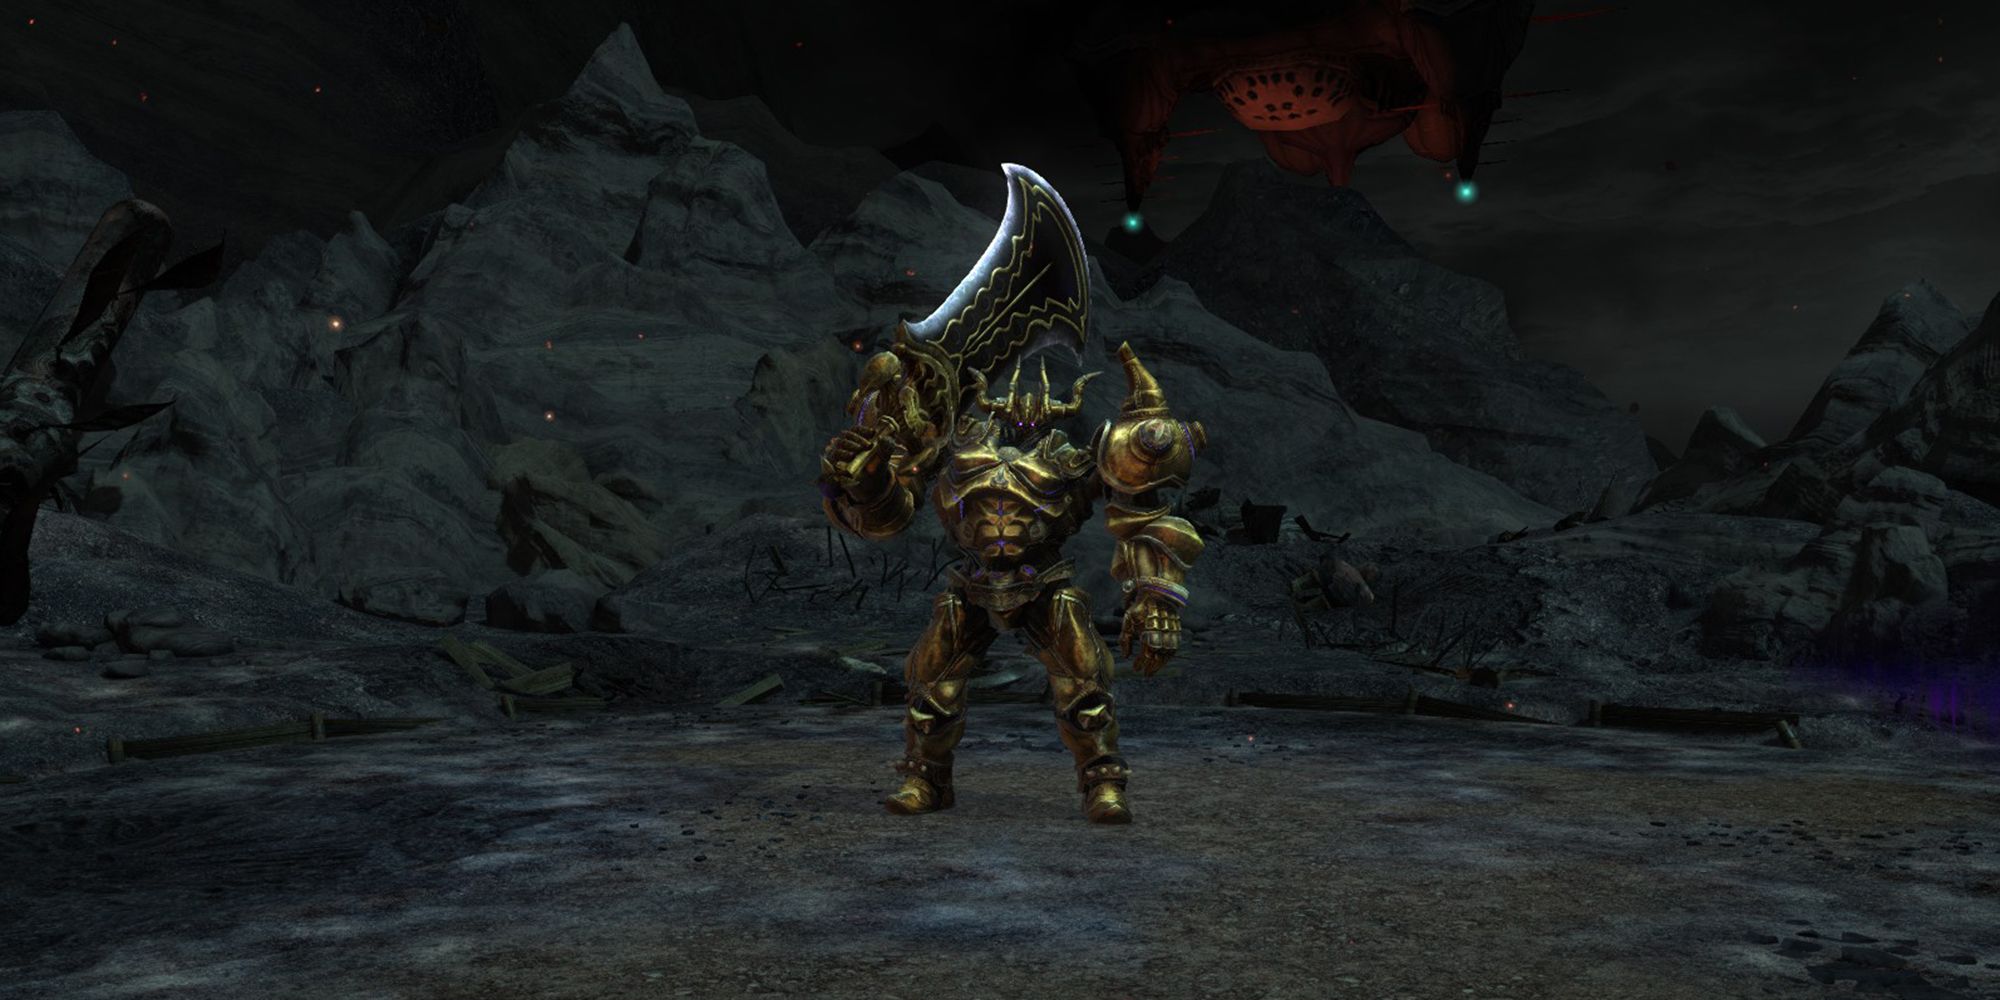 mark 3 magitek colossus, first boss of ghimlyt dark dungeon